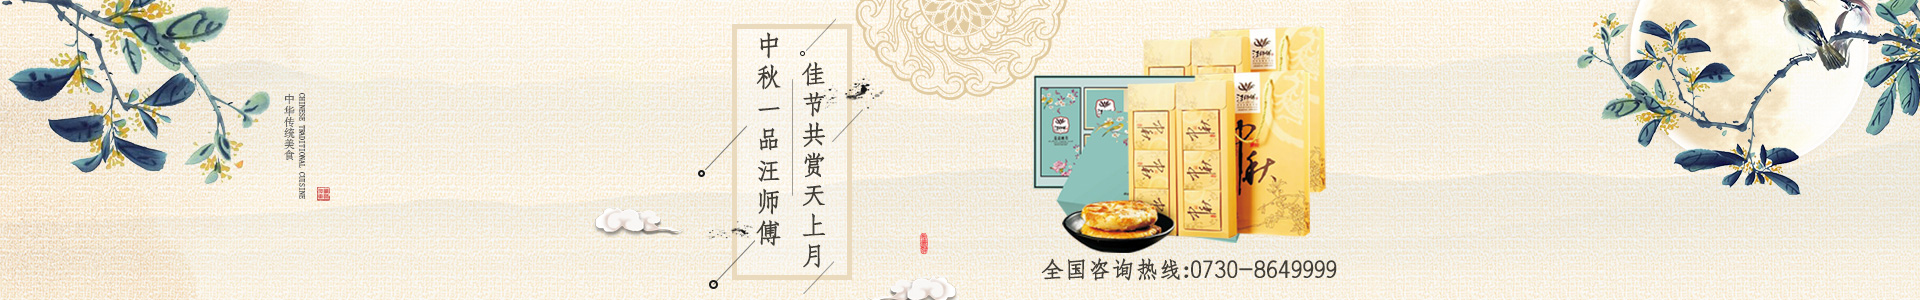 湖南汪师傅食品有限公司_礼粽|月饼|干货|煎饼系列销售哪里好